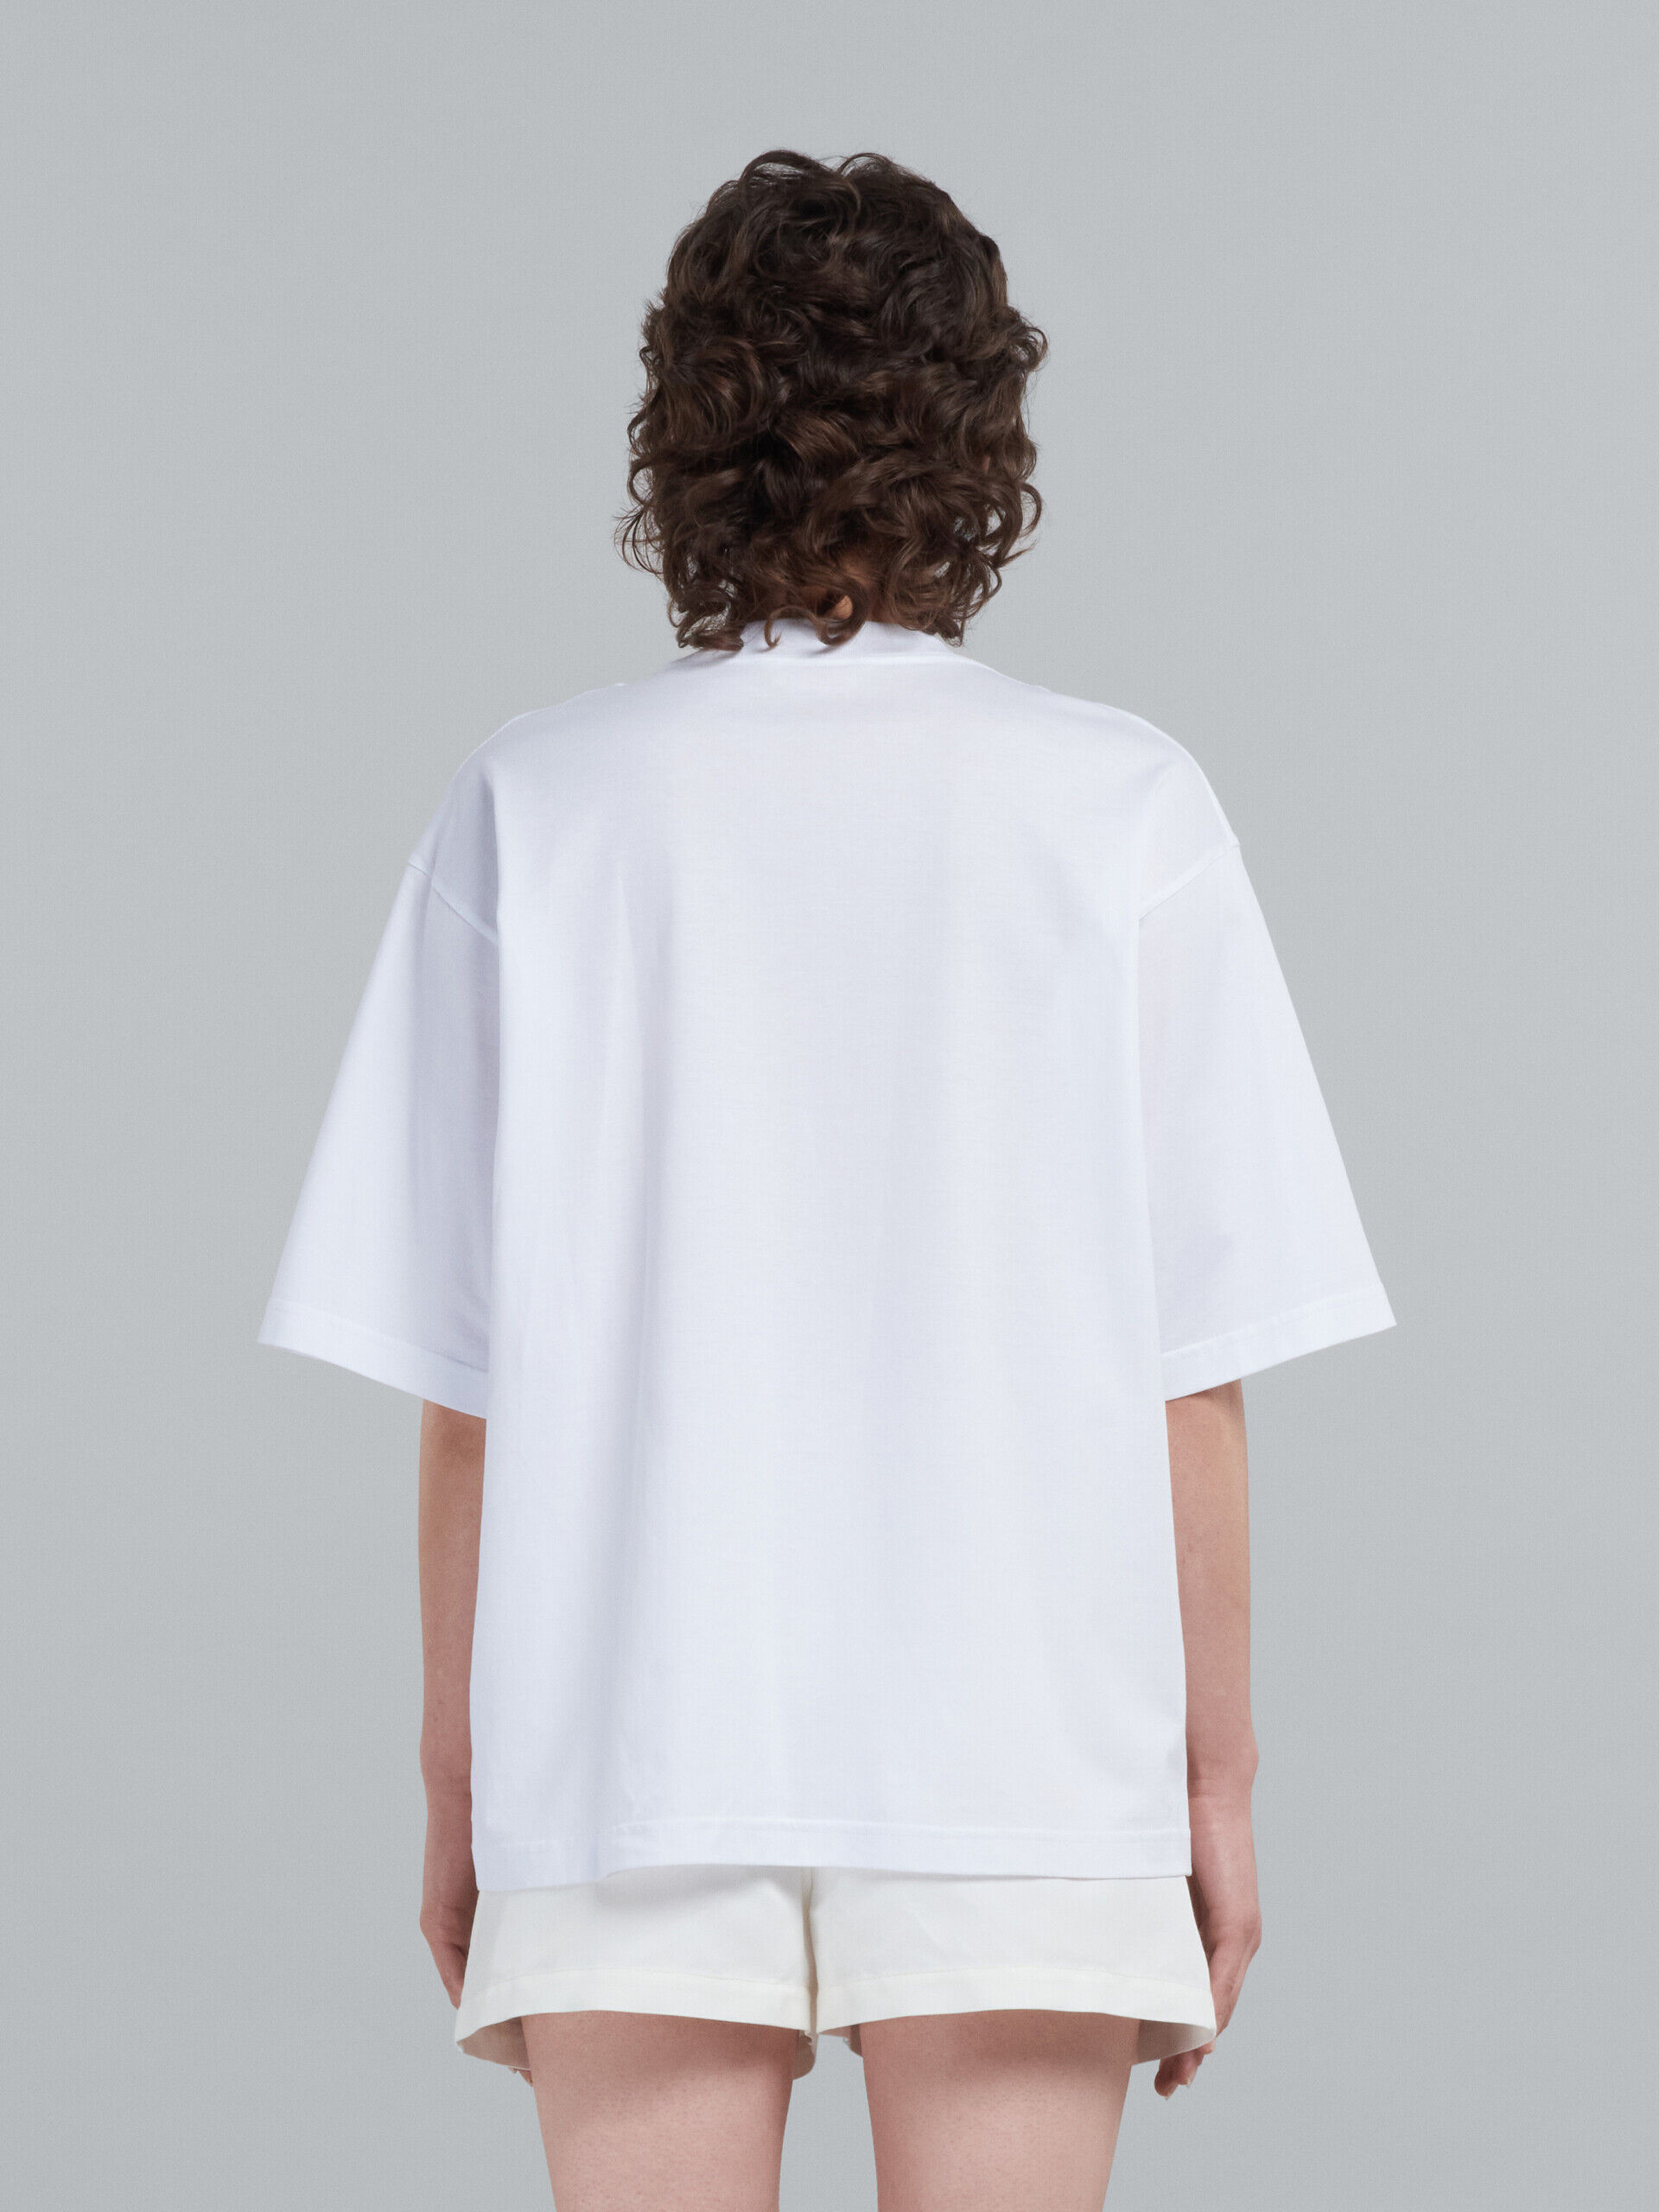 ホワイト ロゴ入り オーガニックコットン製Tシャツ | Marni